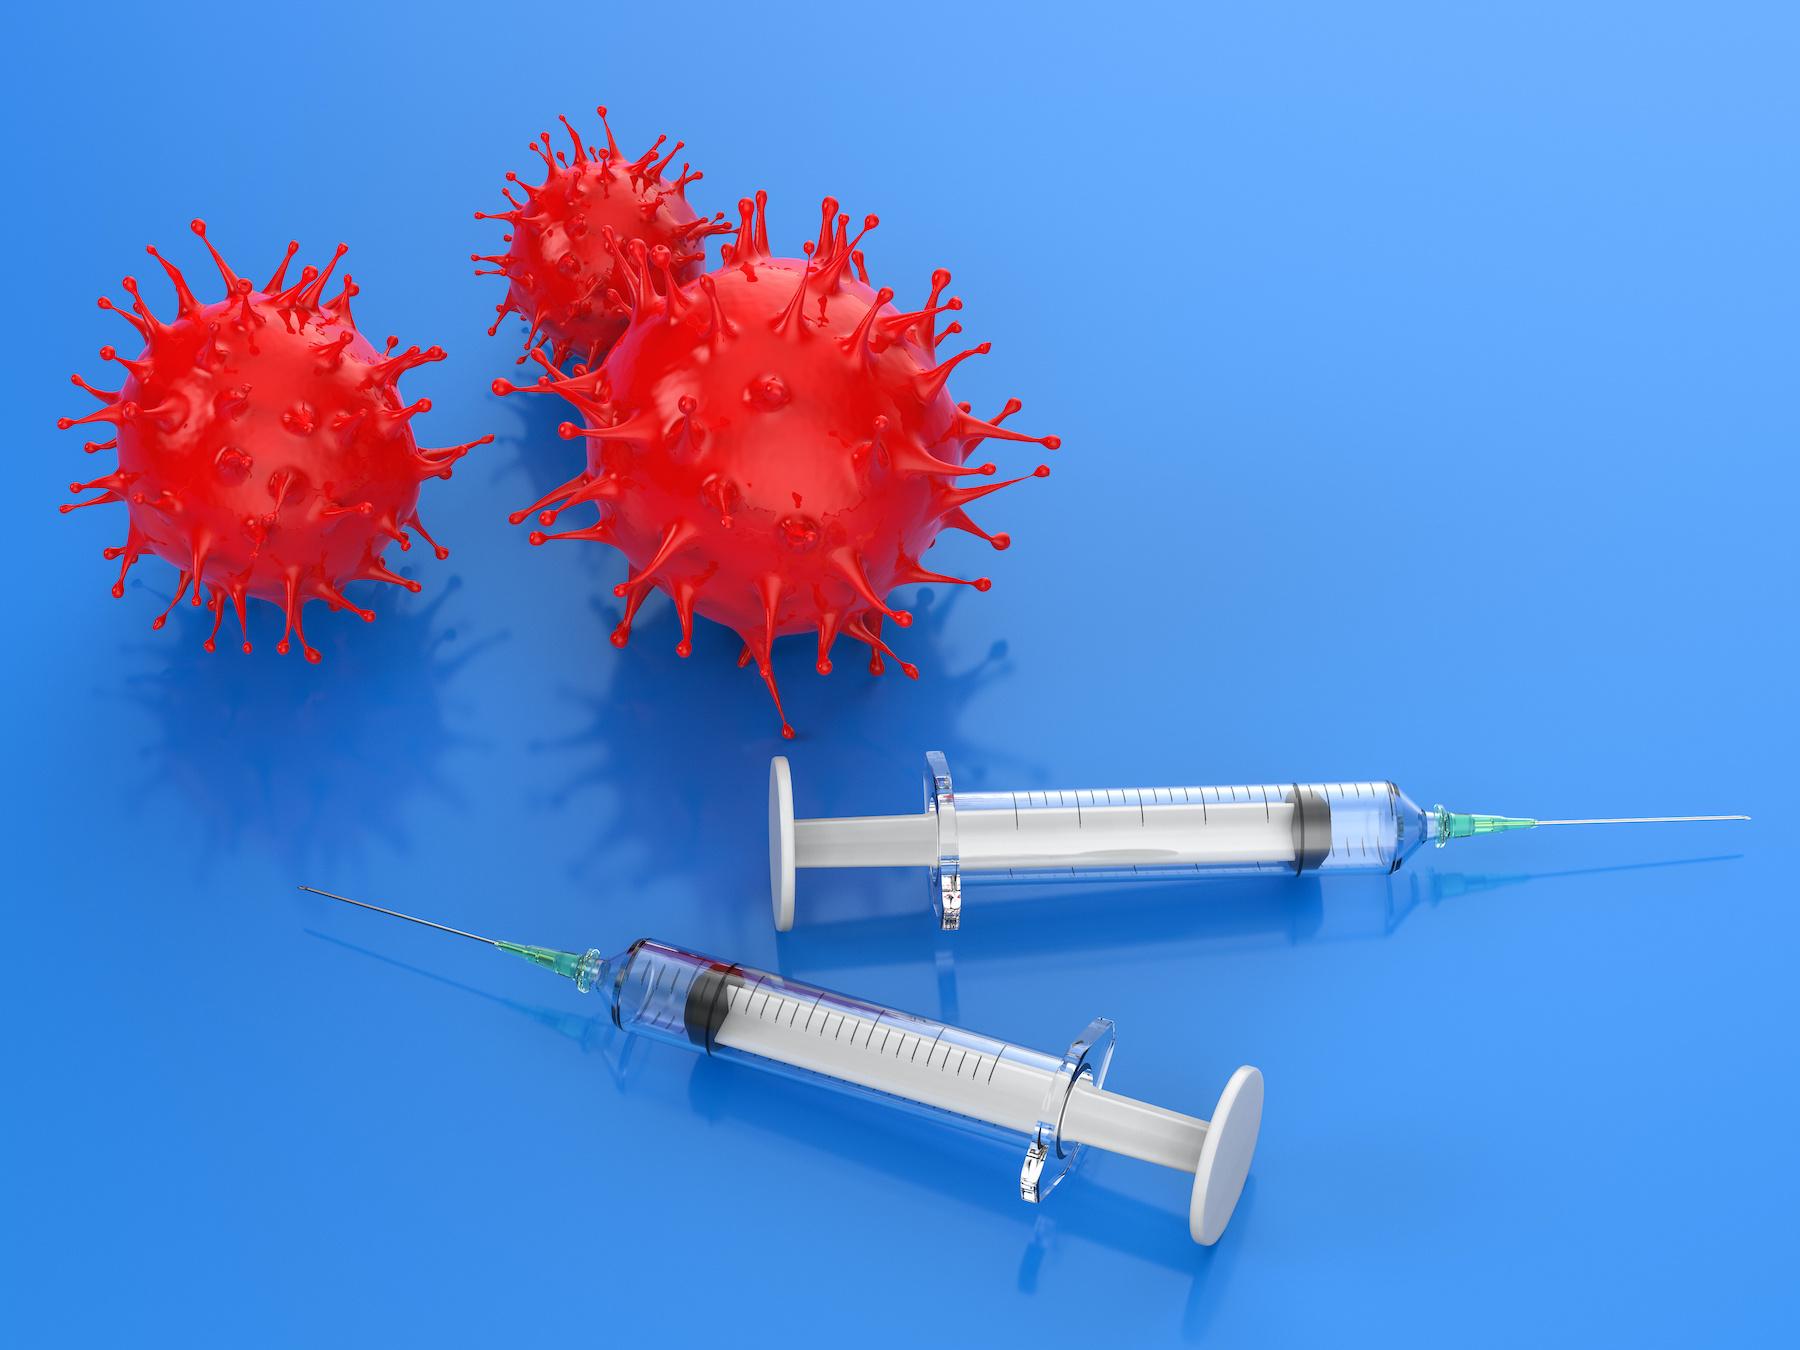 Le vaccin contre la grippe saisonnière pourrait offrir une protection partielle contre le coronavirus. © phonlamaiphoto, Adobe Stock